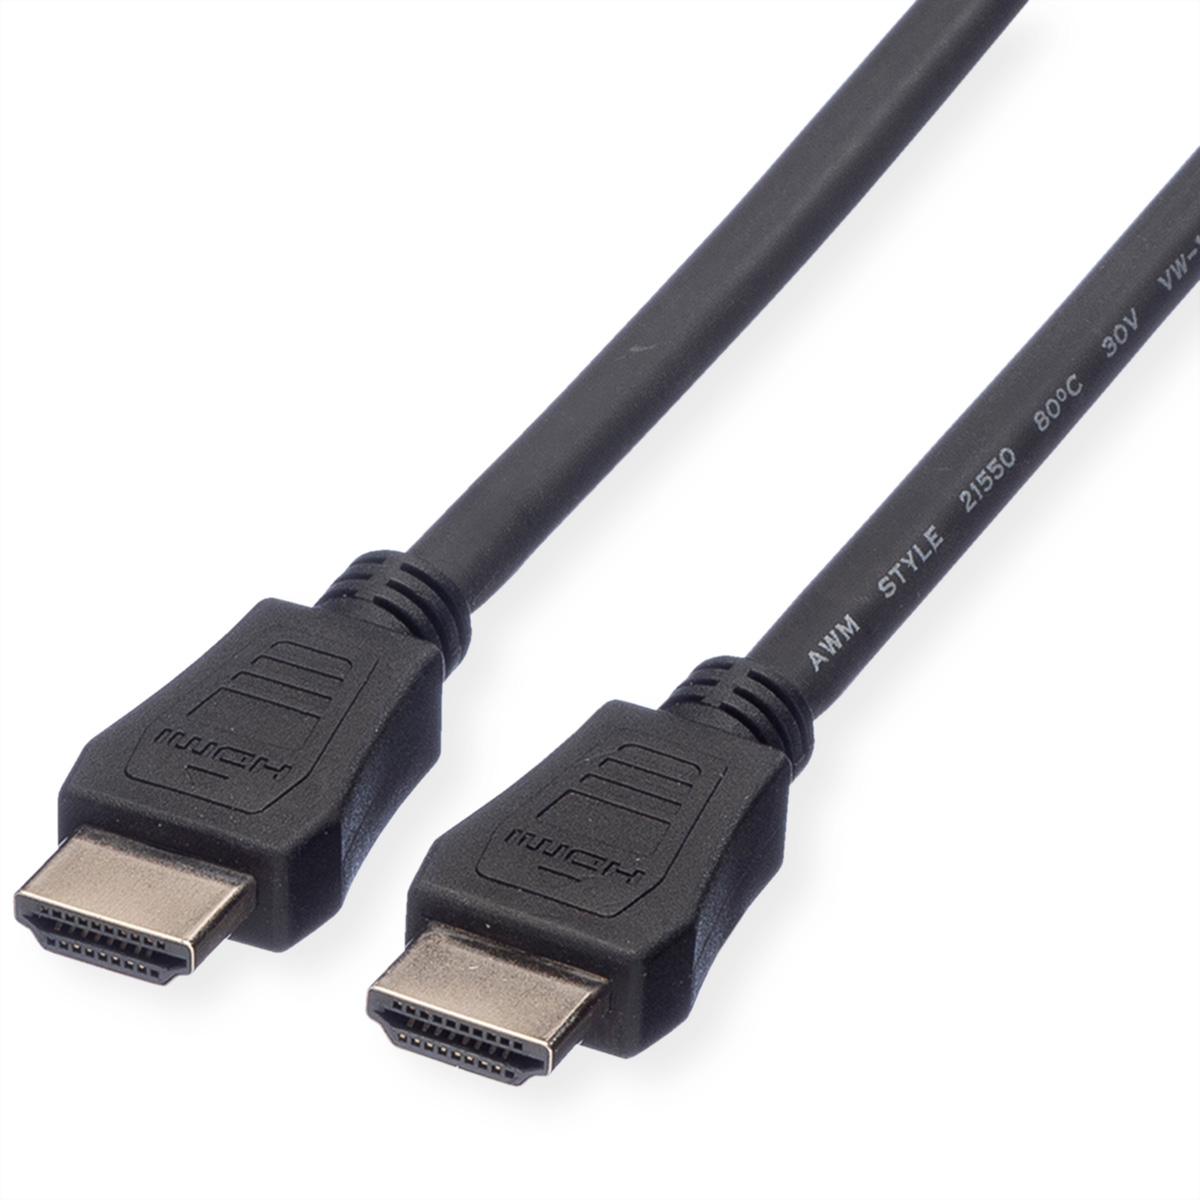 Kabel mit VALUE Speed mit High Ethernet, HDMI Speed High Kabel HDMI LSOH Ethernet